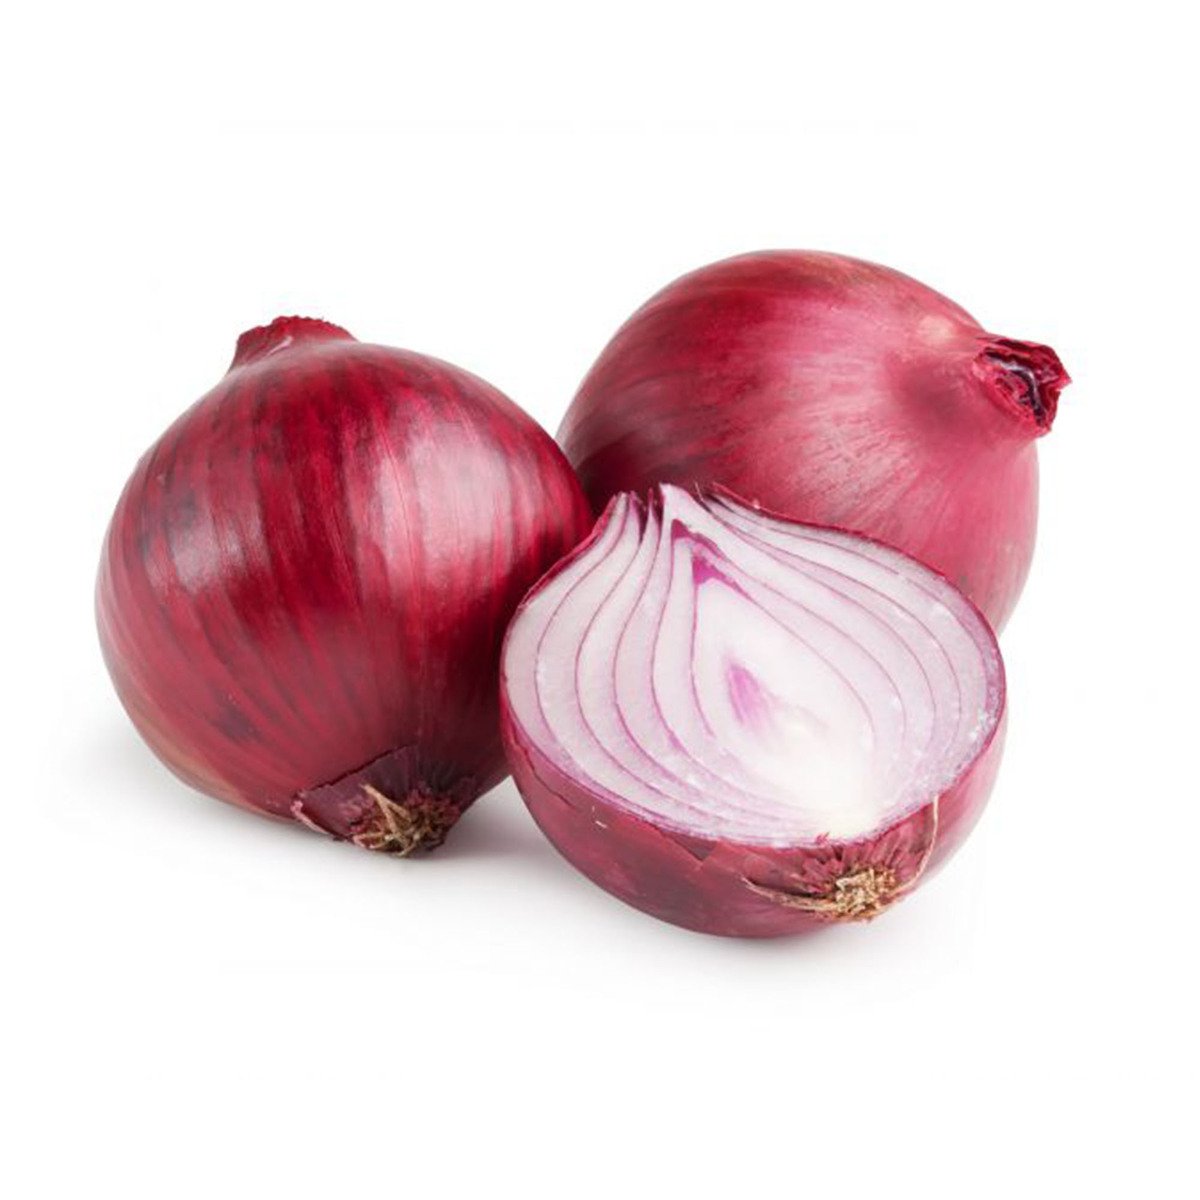 Buy Onion Yemen 1kg Online at Best Price | Flavouring Vegetable | Lulu KSA in Saudi Arabia